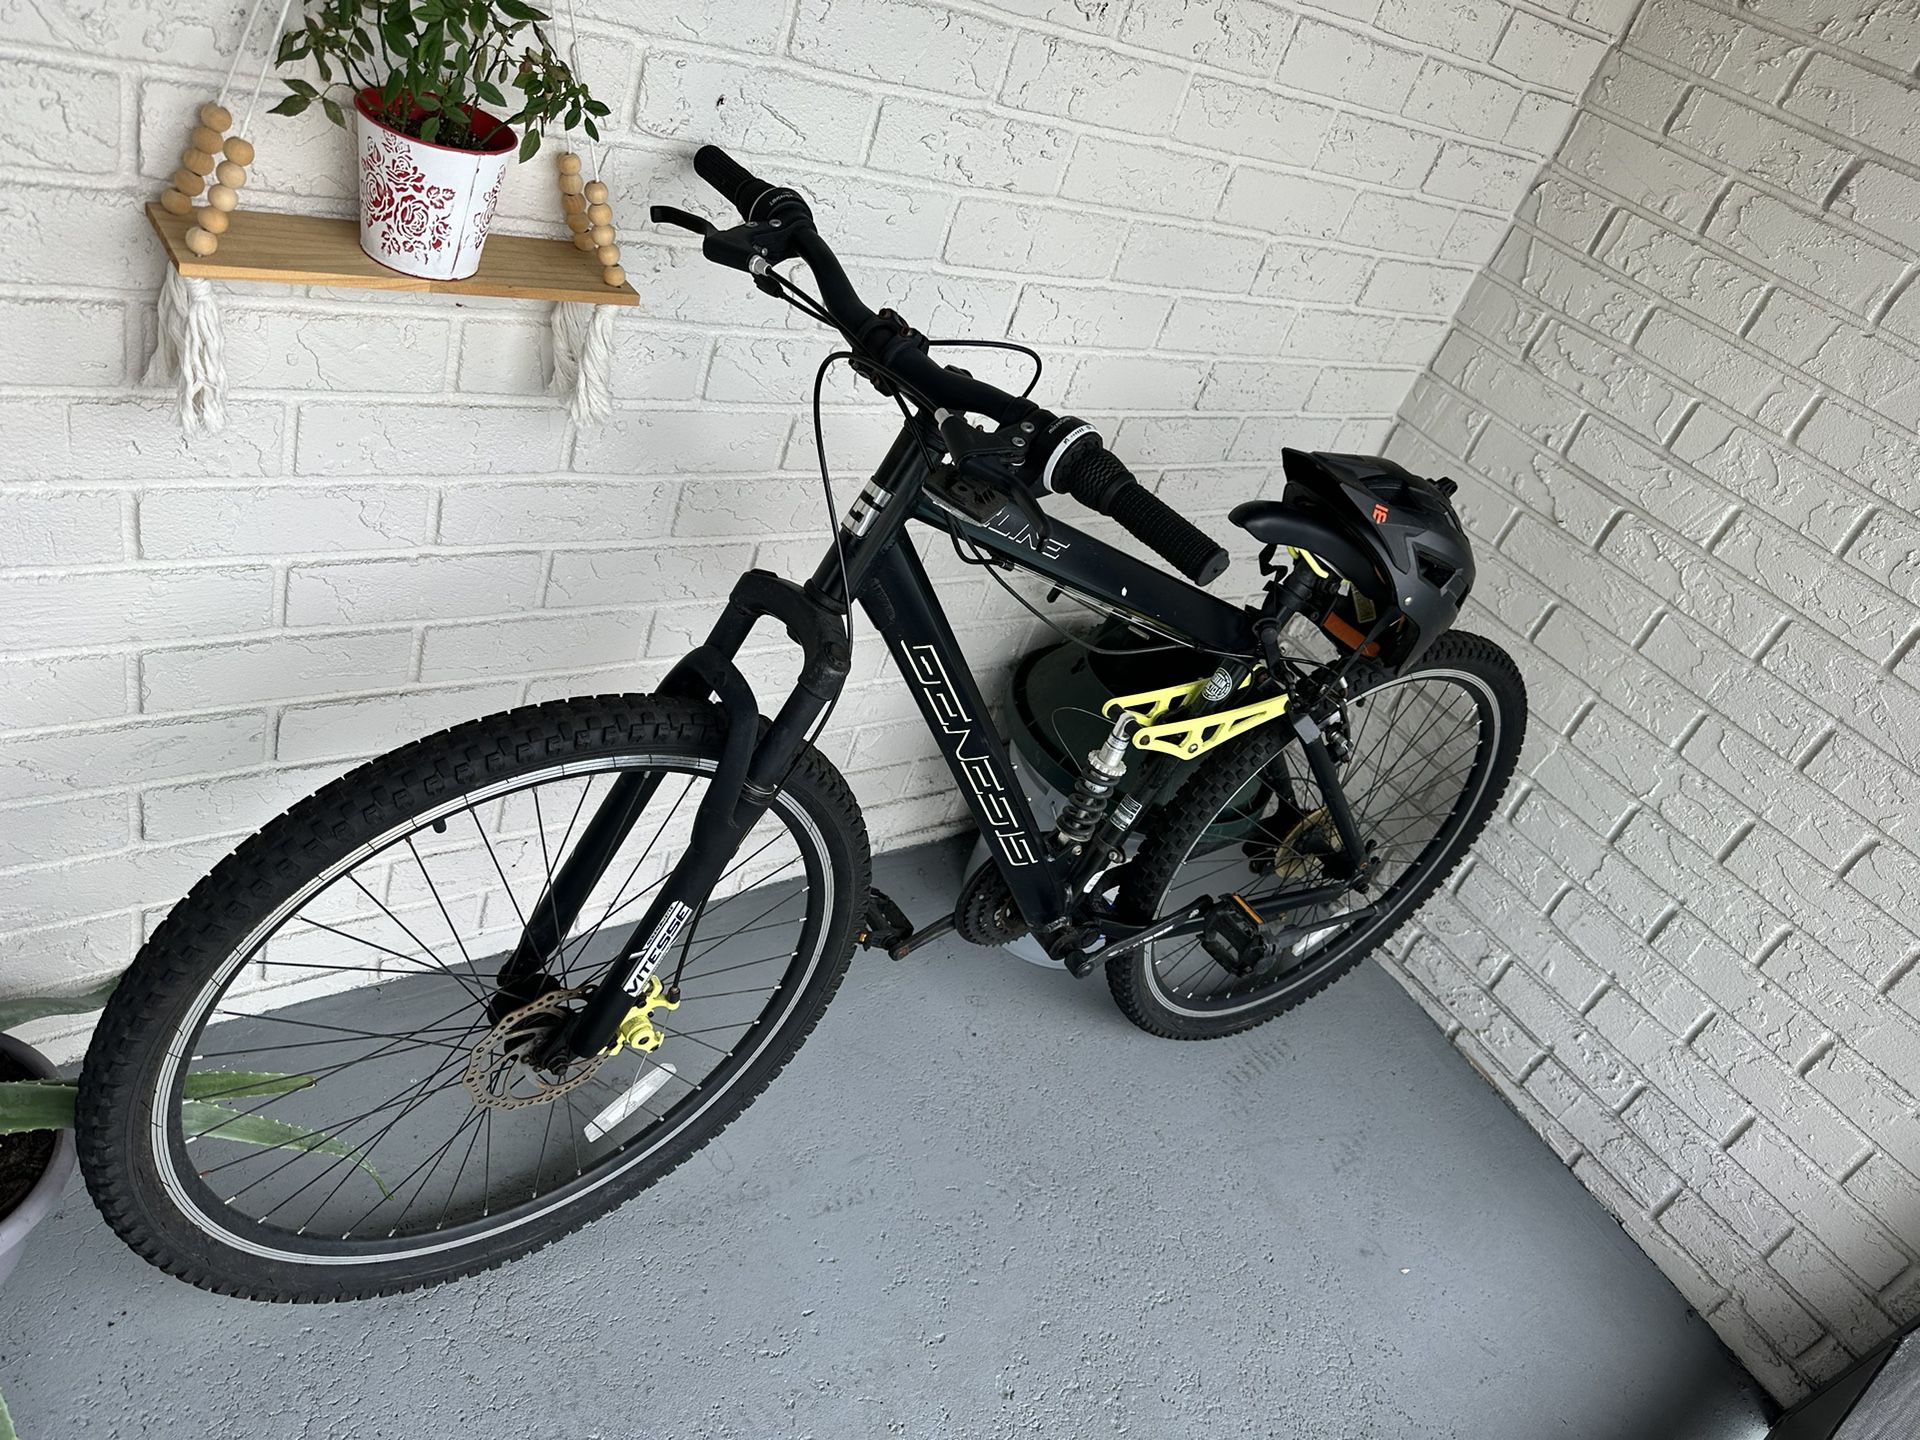 Bike 29 